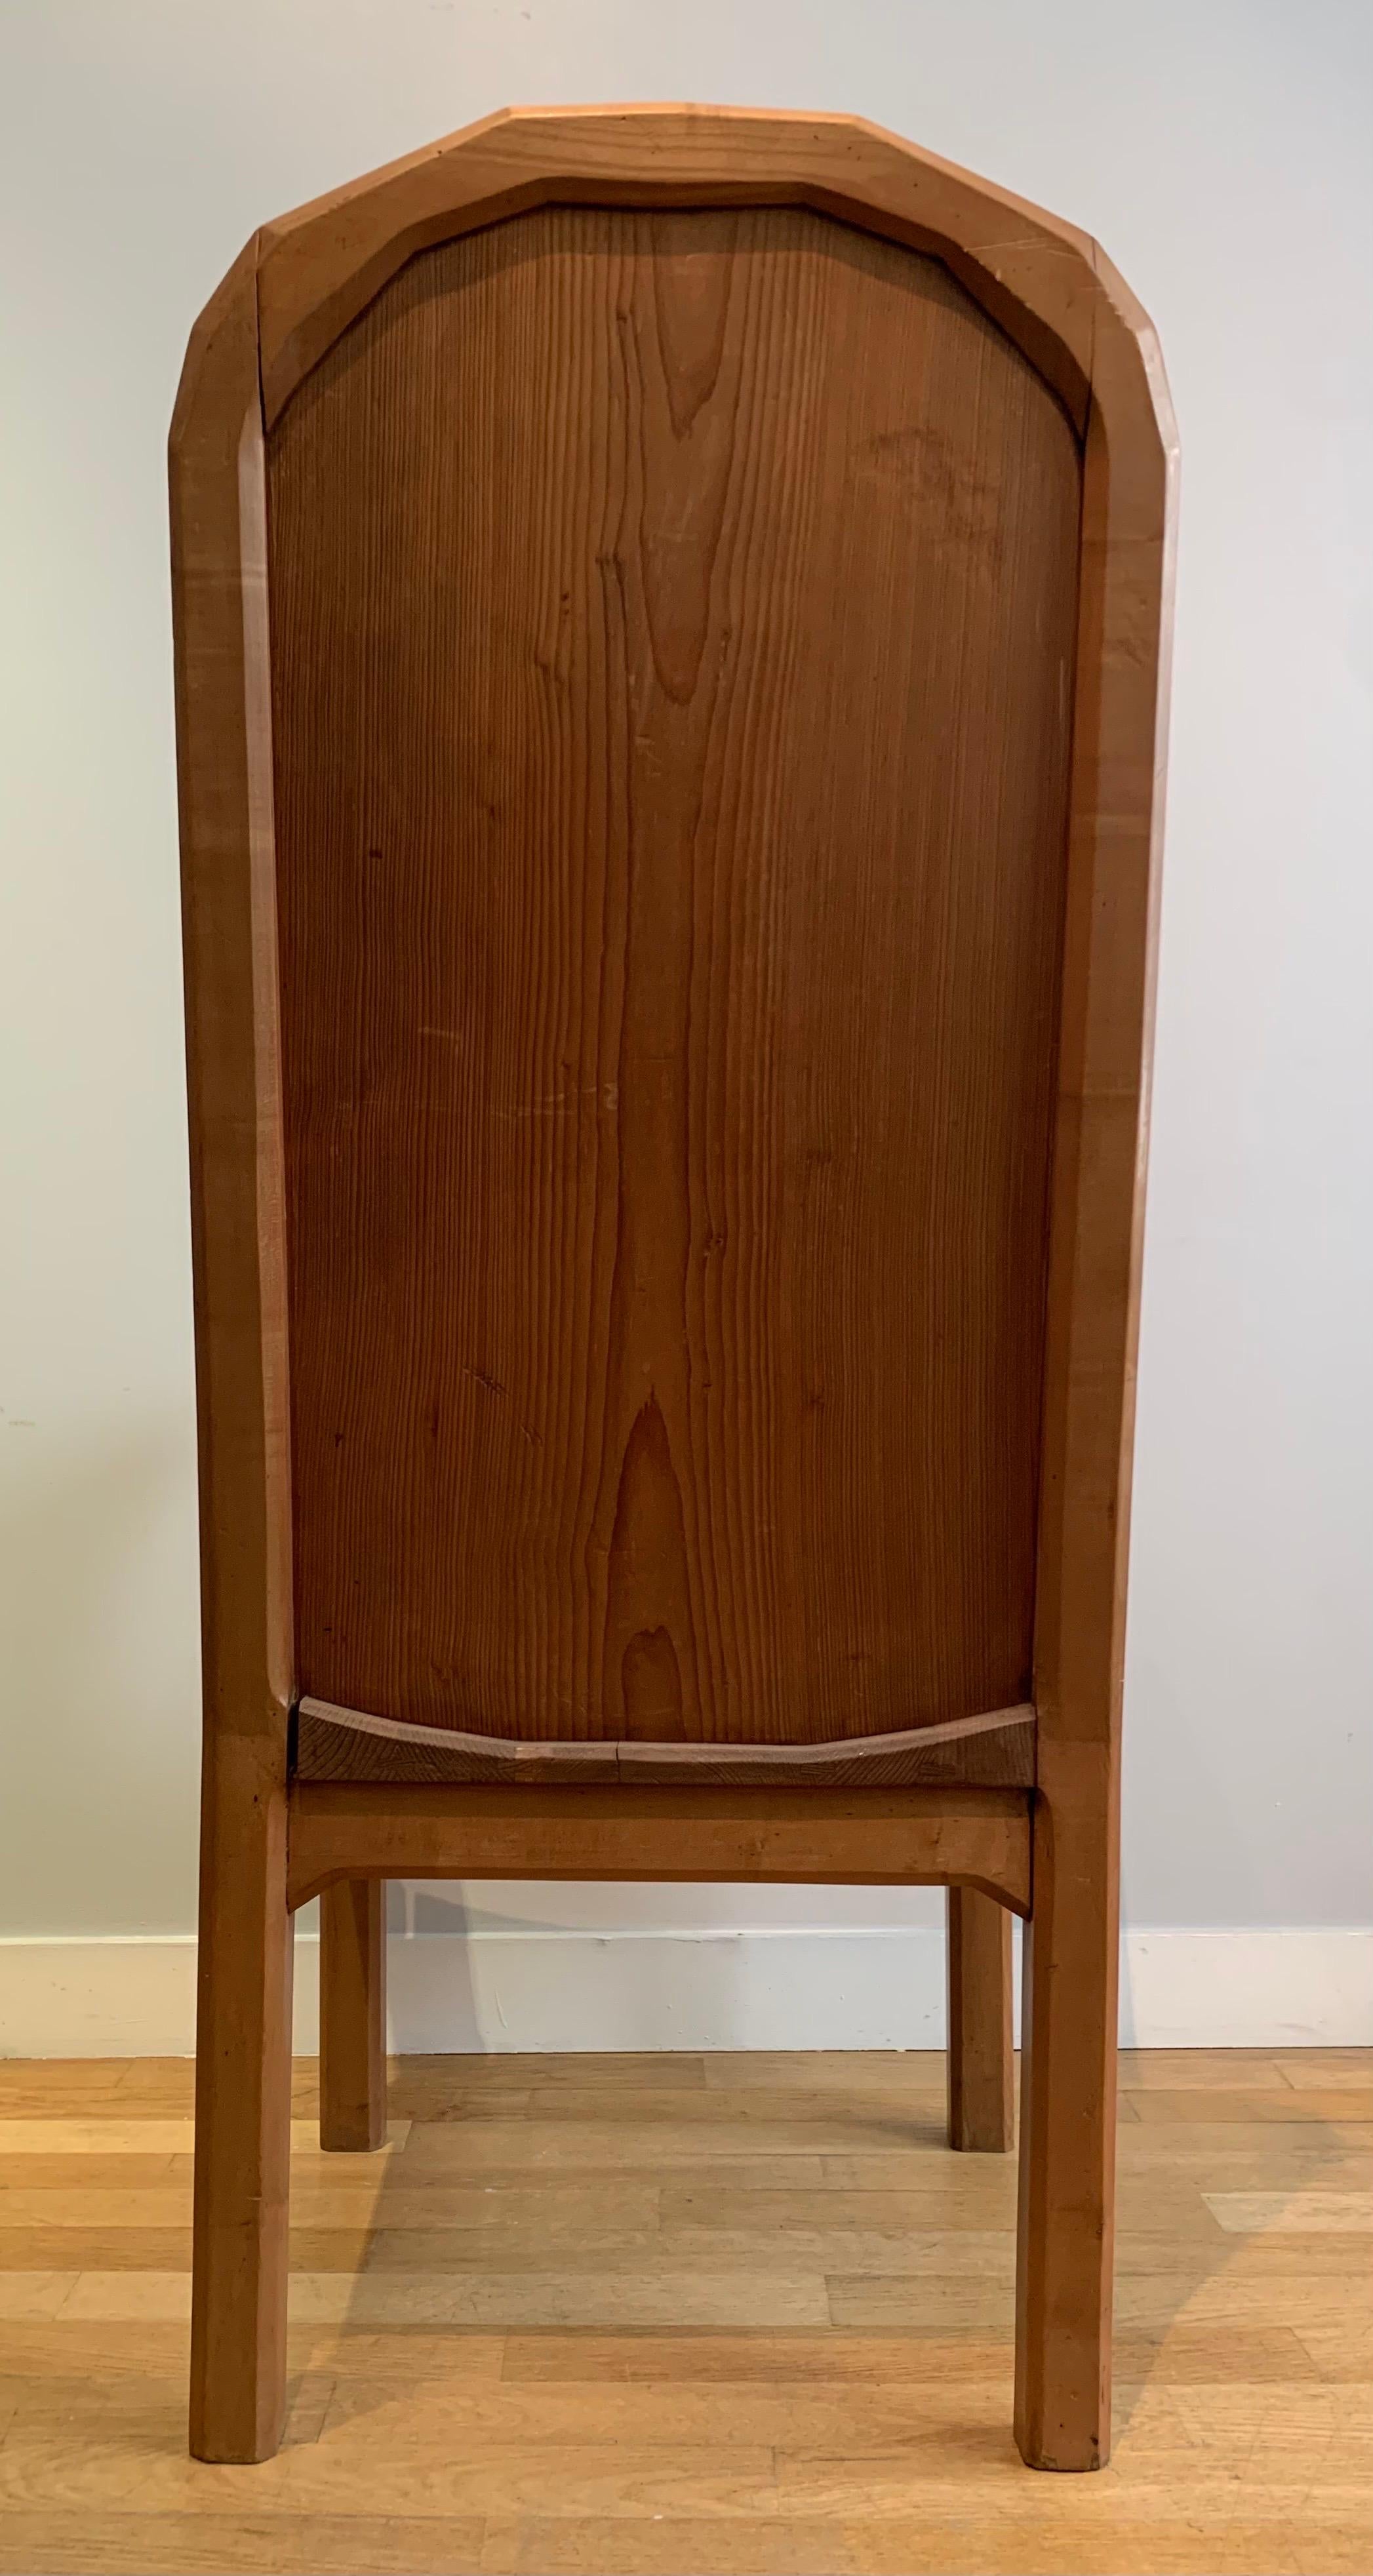 Wood Anthroposophical Meditation Armchair, Rudolf Steiner, Dornach, Switzerland 1920 For Sale